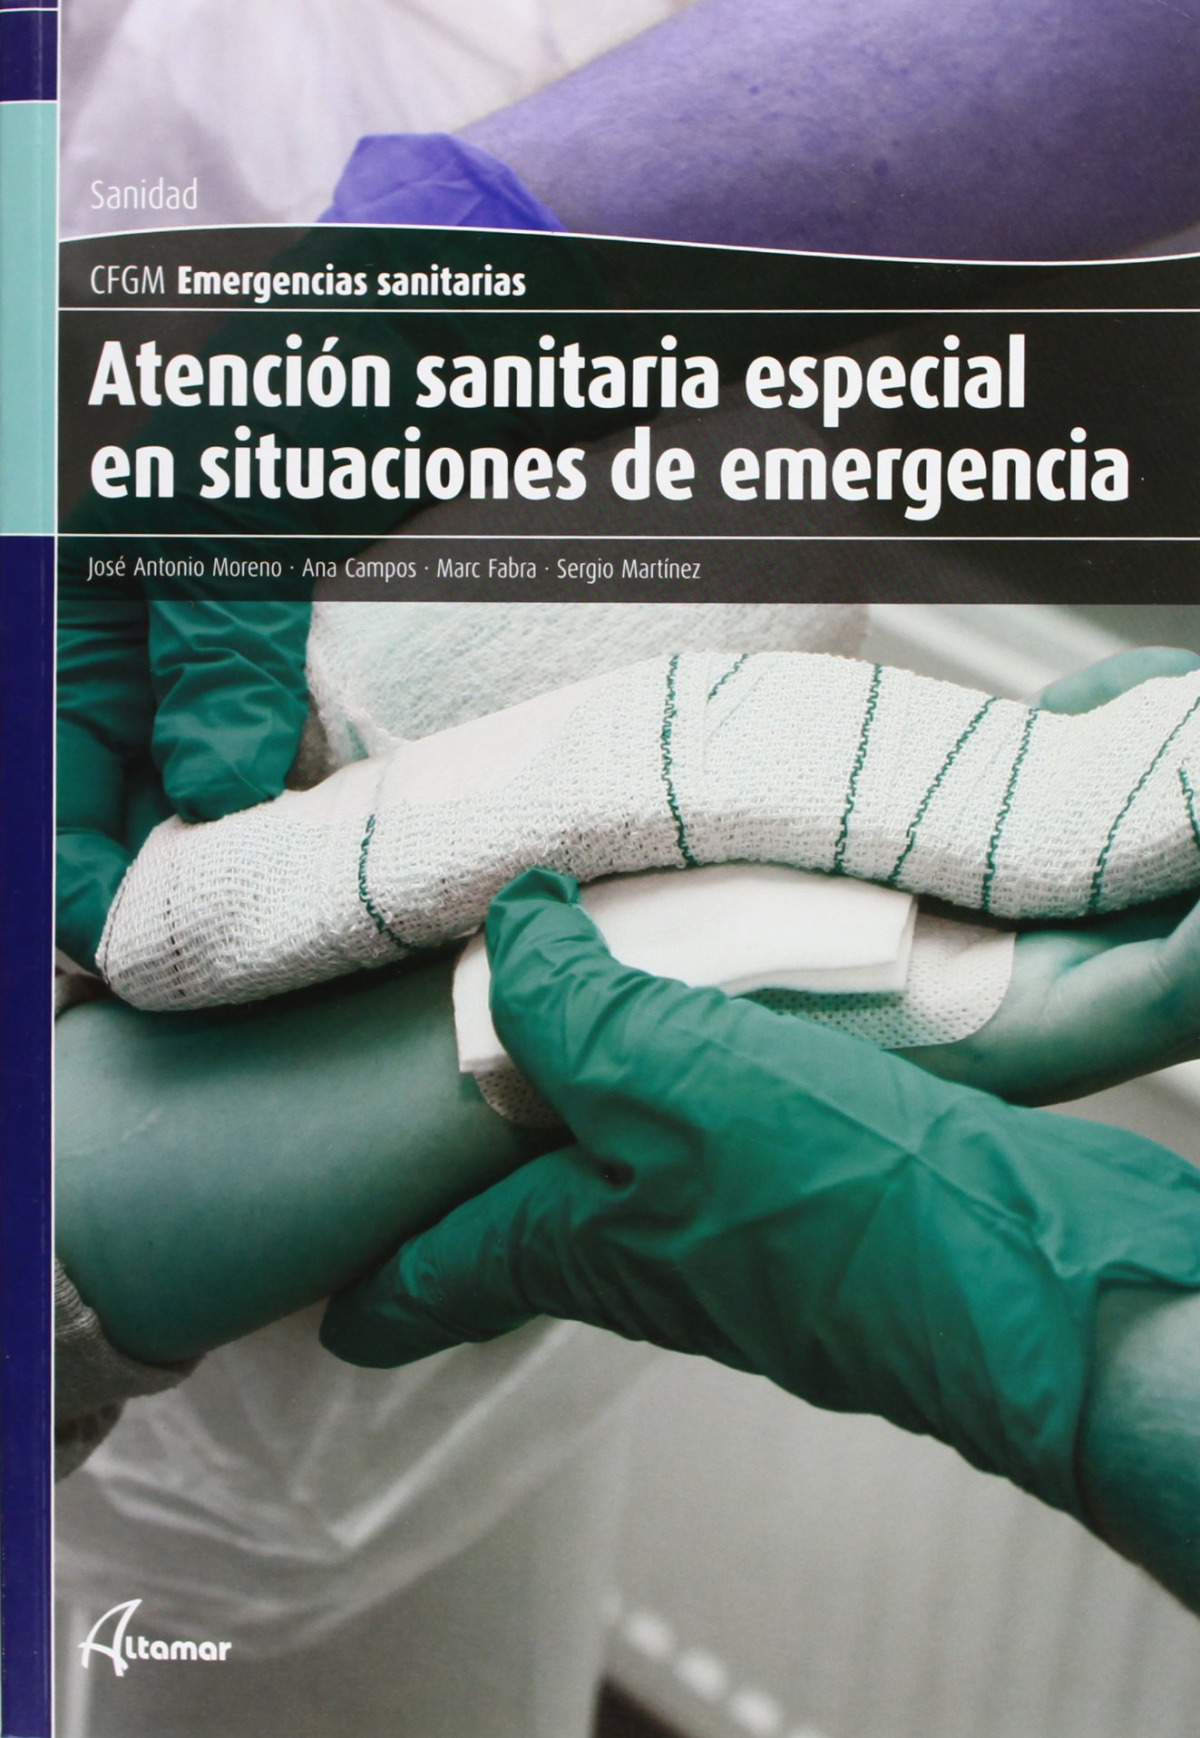 (12).(gm).atencion sanitaria especial - Moreno Molina, Jose Antonio